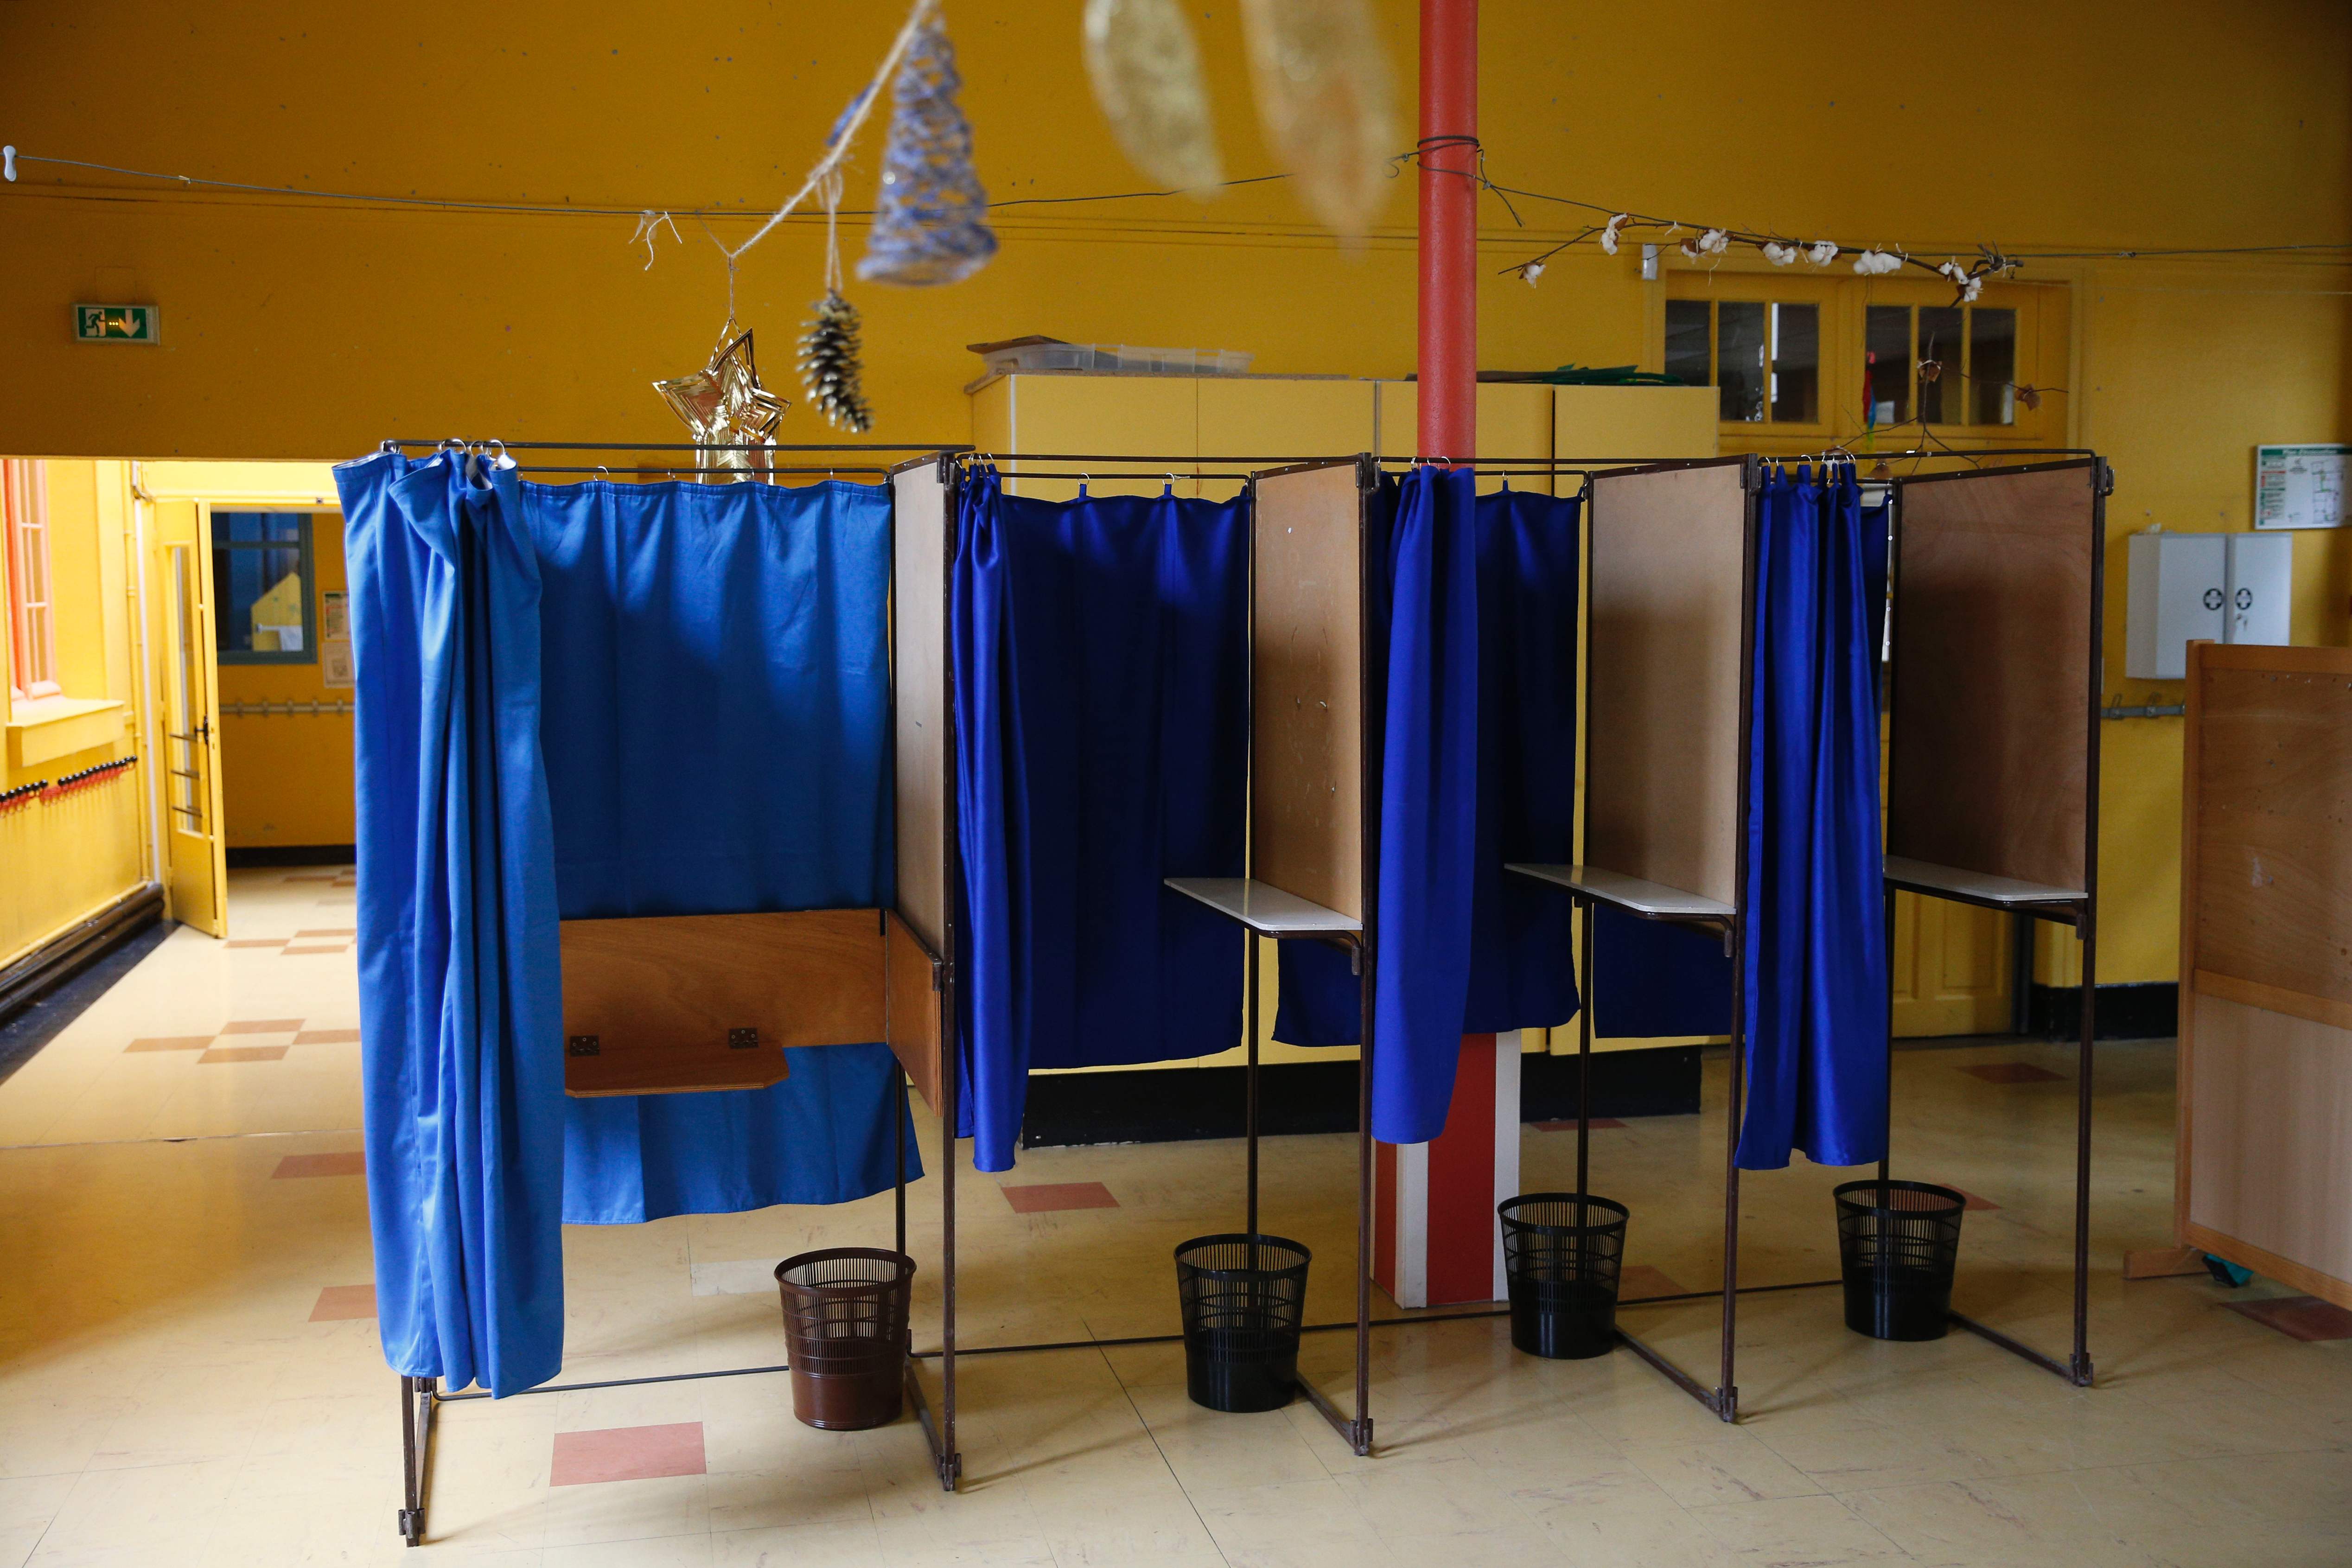 فرنسا تستعد للجولة الثانية من انتخابات الرئاسة